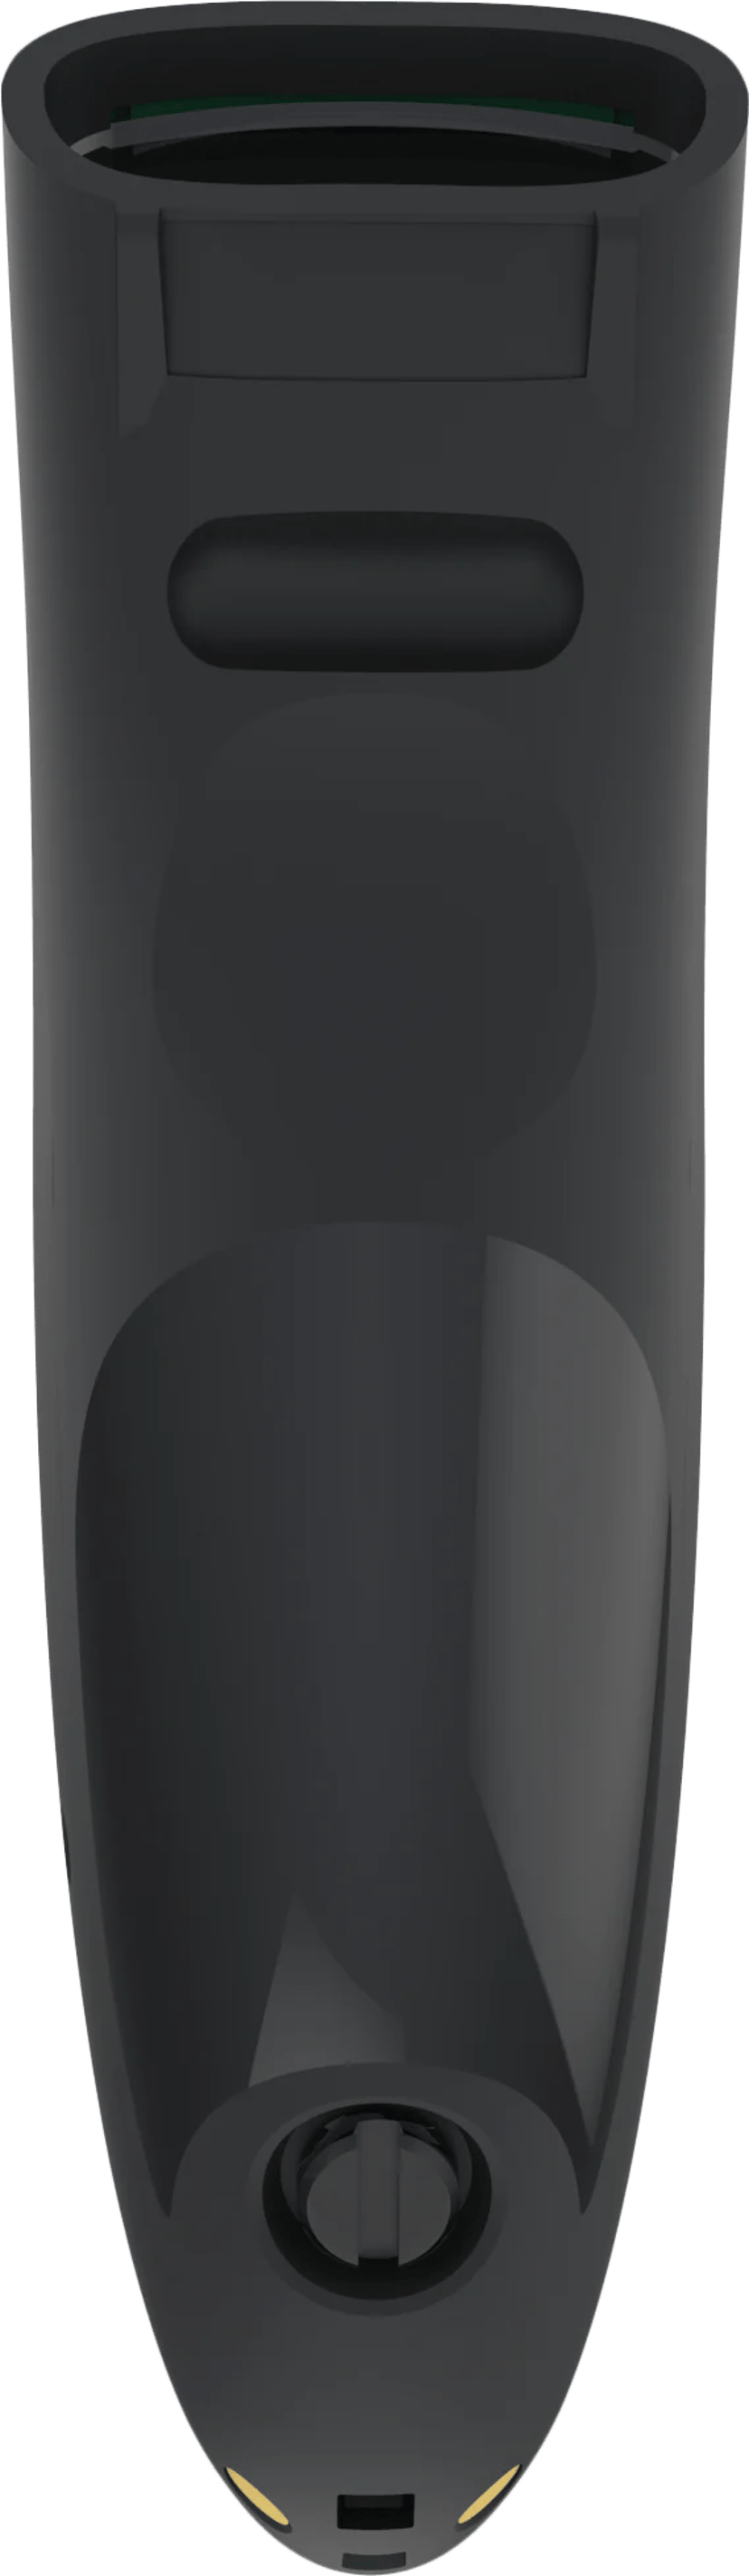 Socket Mobile SocketScan S740 Musta sekä Lataustelakka